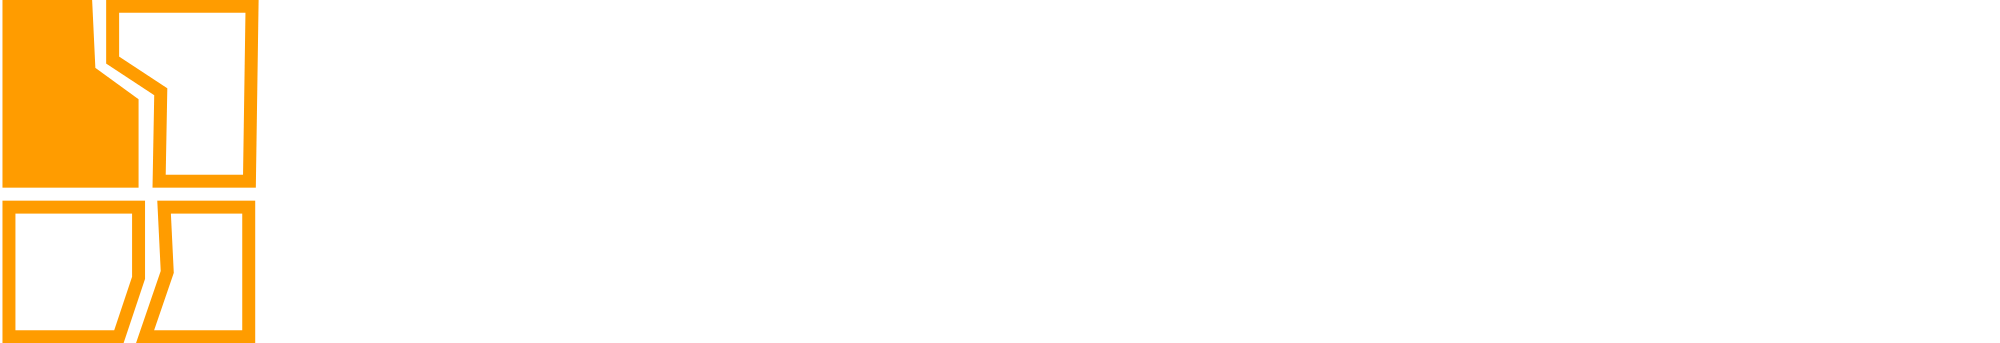 Tech Zone App